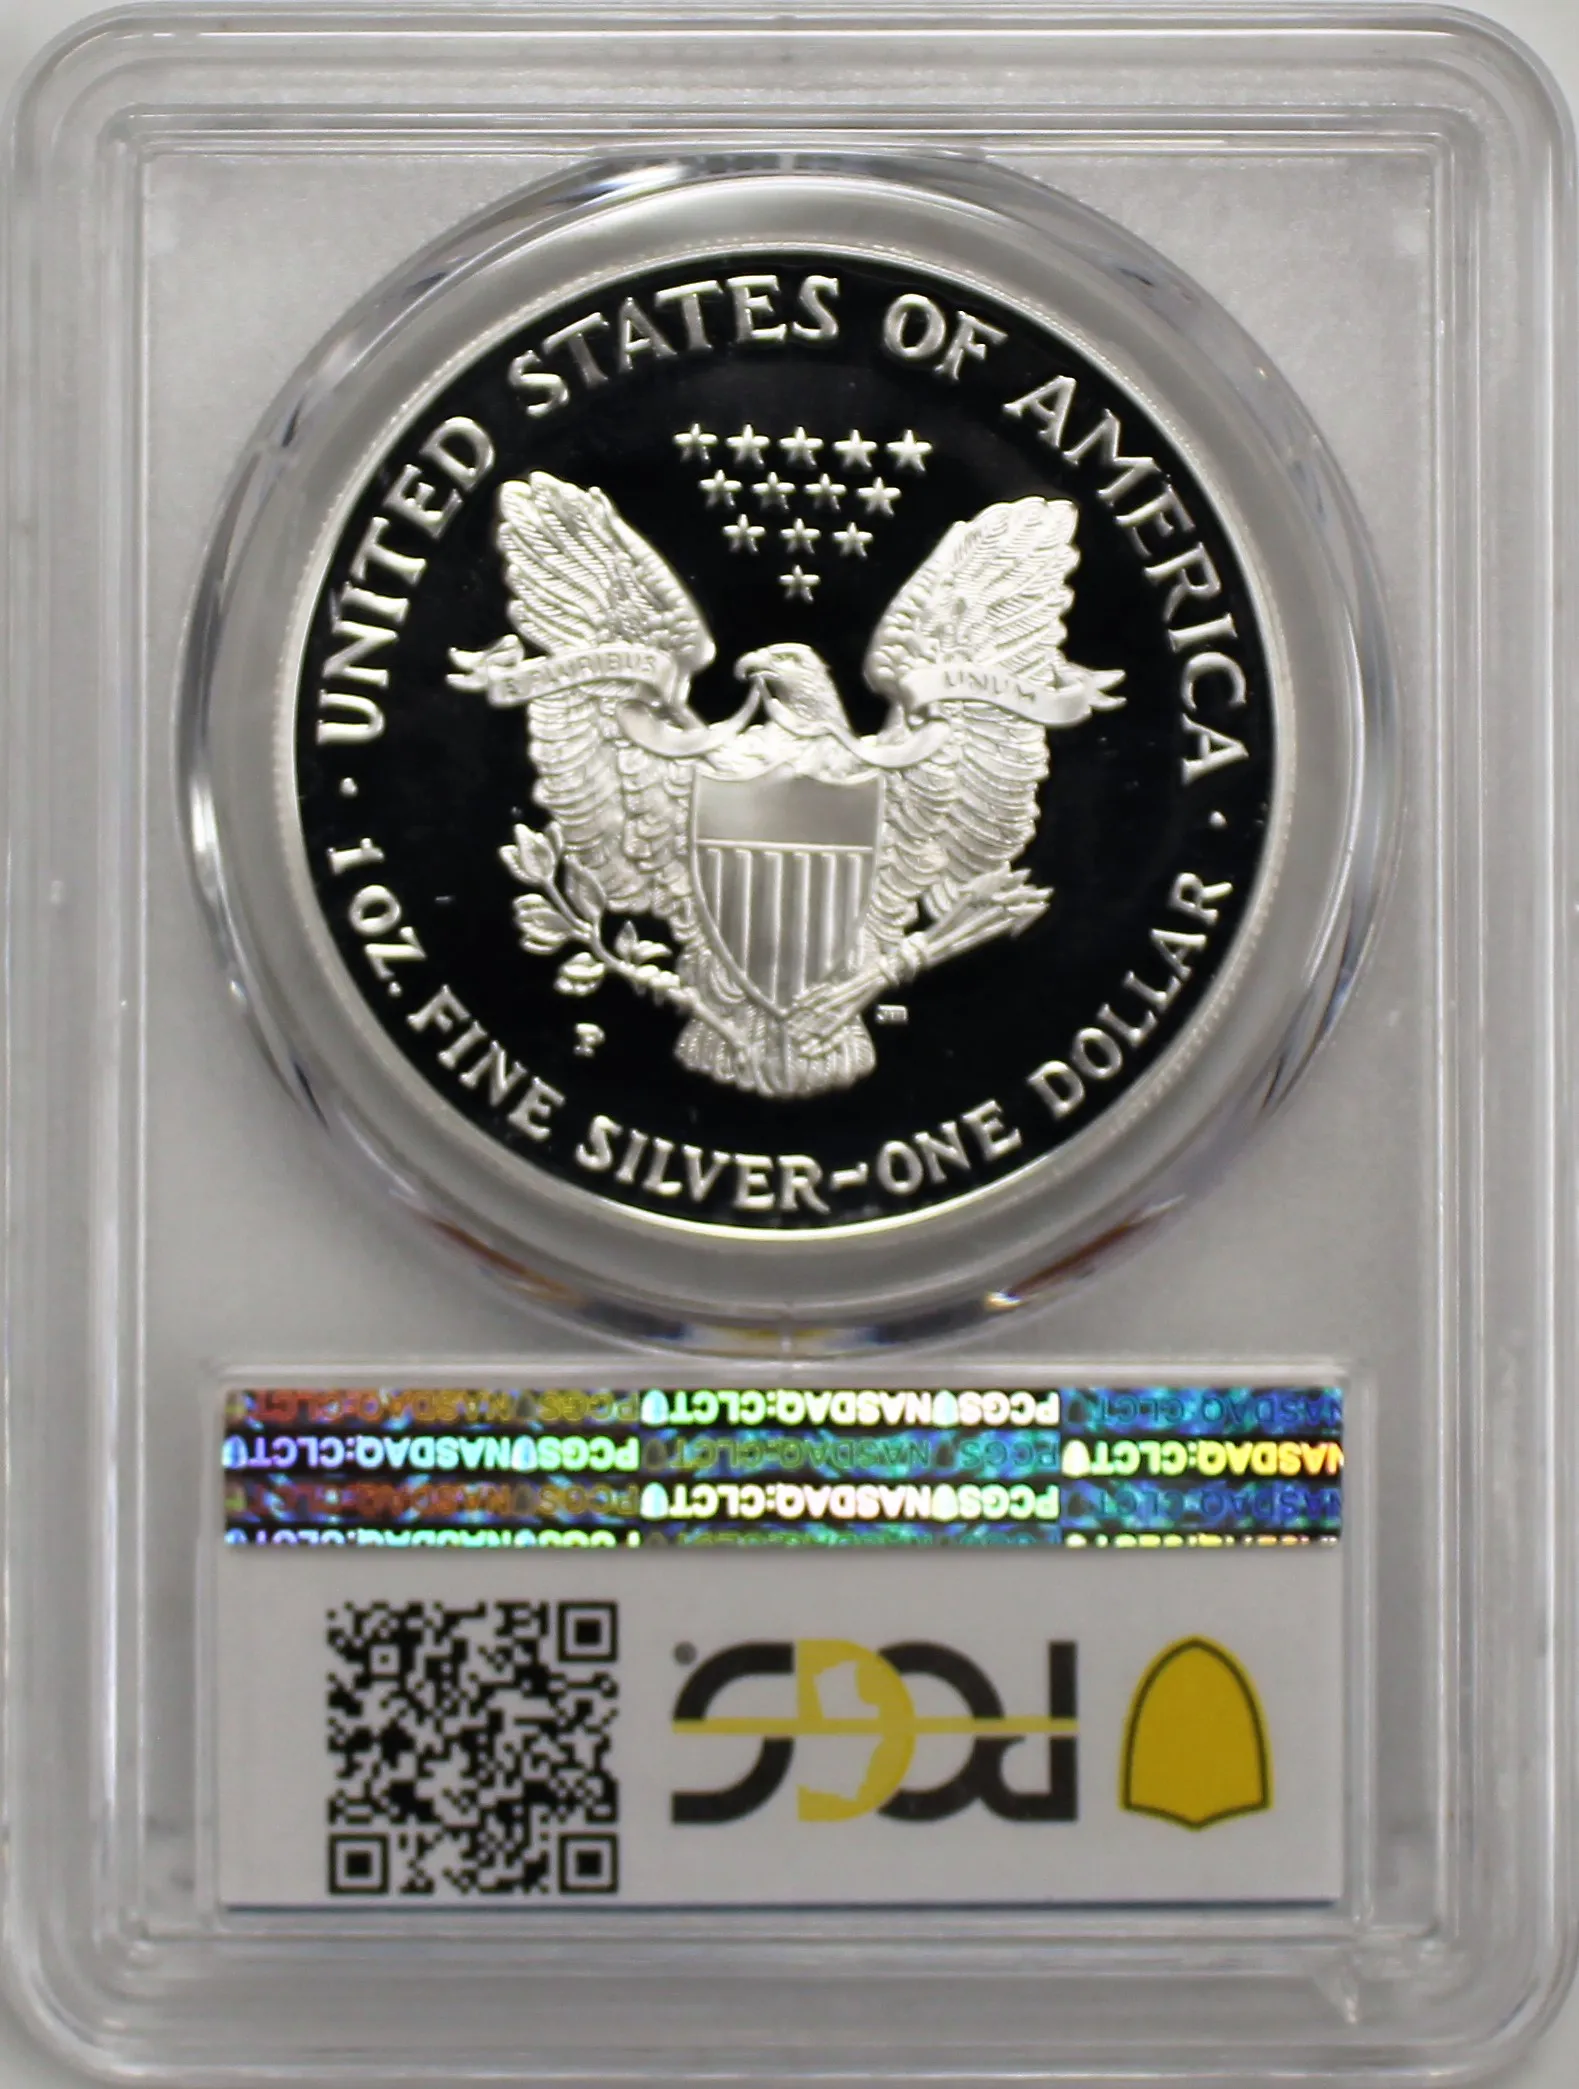 1999 P $1 Proof Silver Eagle PCGS PR70 DCAM Blue Label